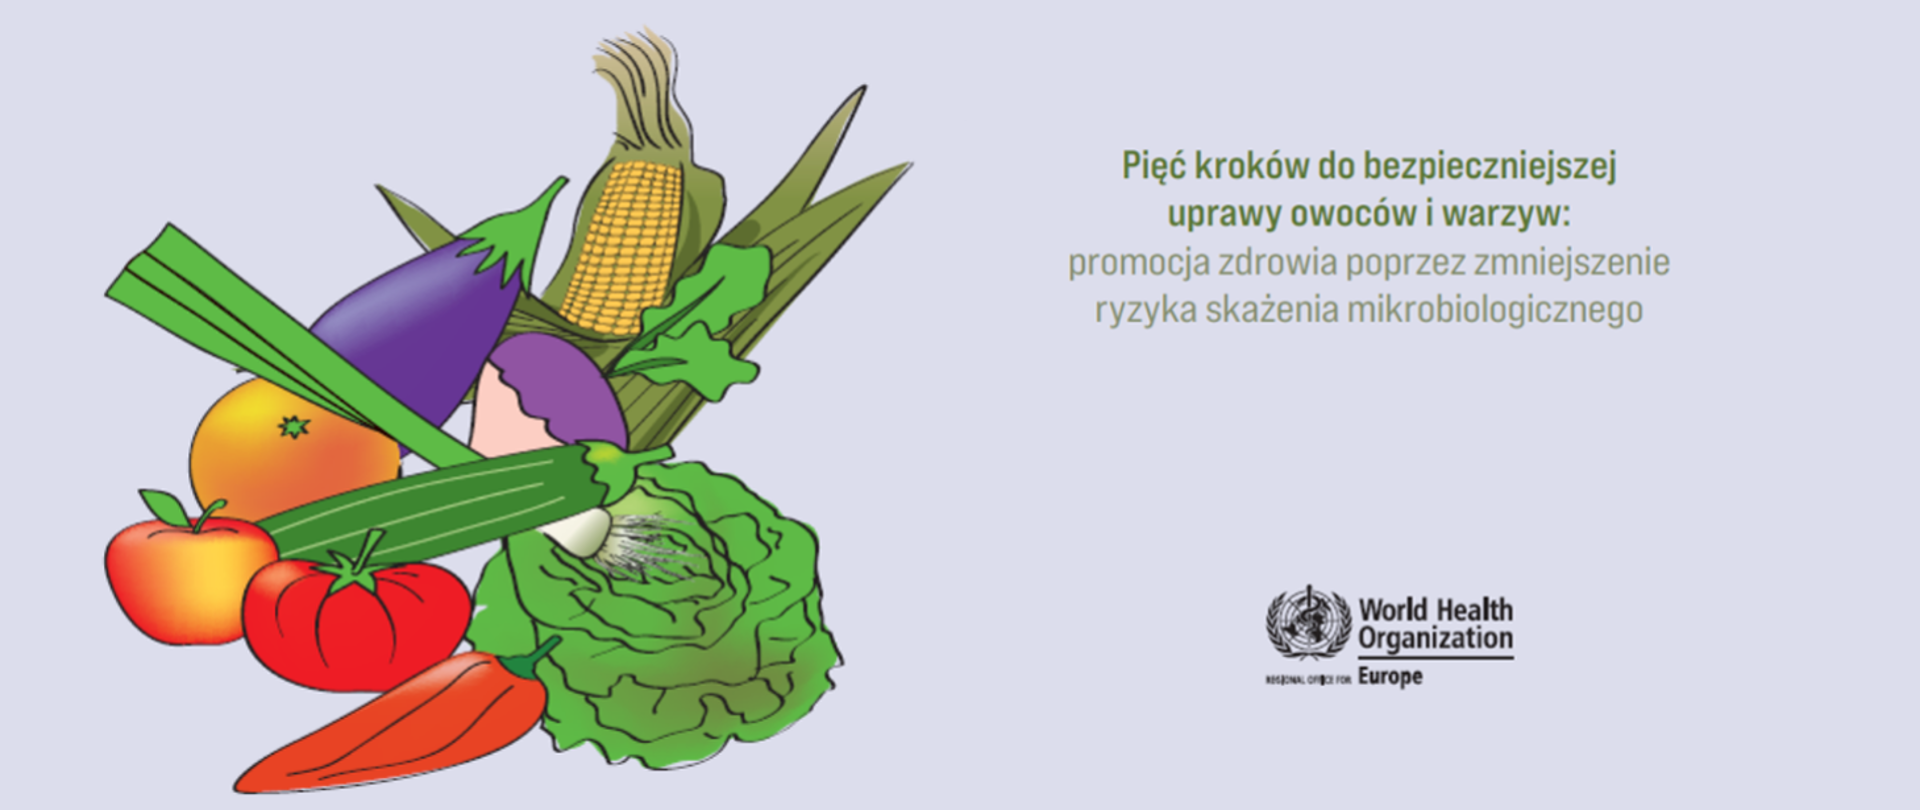 Pięć kroków do bezpieczniejszej uprawy owoców i warzyw promocja zdrowia poprzez zmniejszenie ryzyka skażenia mikrobiologicznego